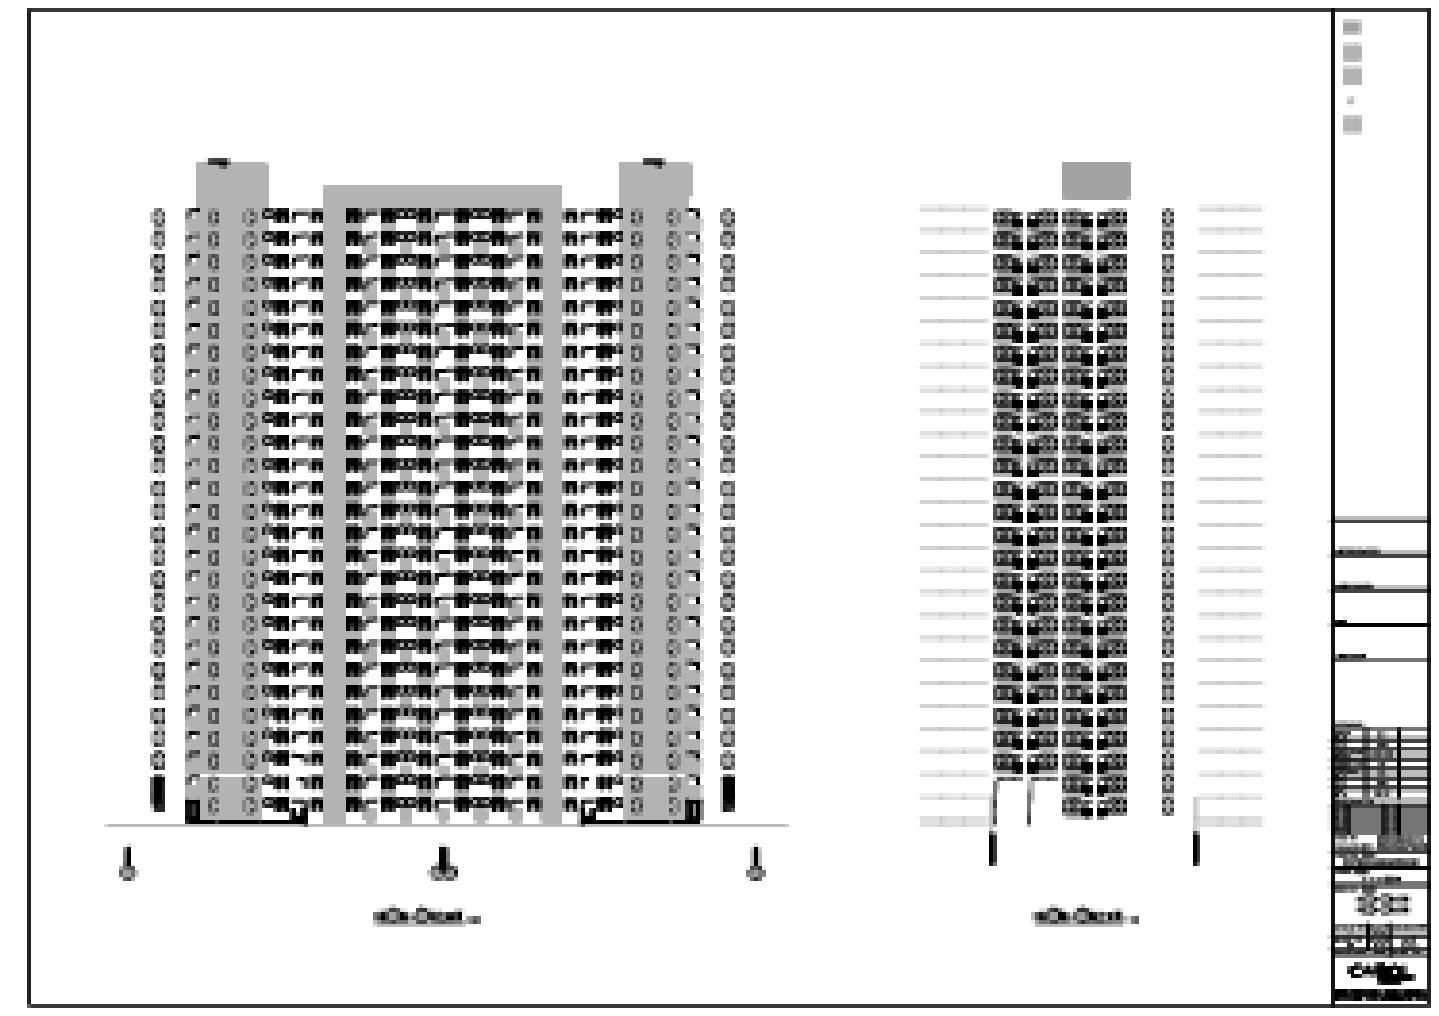 龙华扩展区0008地块保障性住房项目